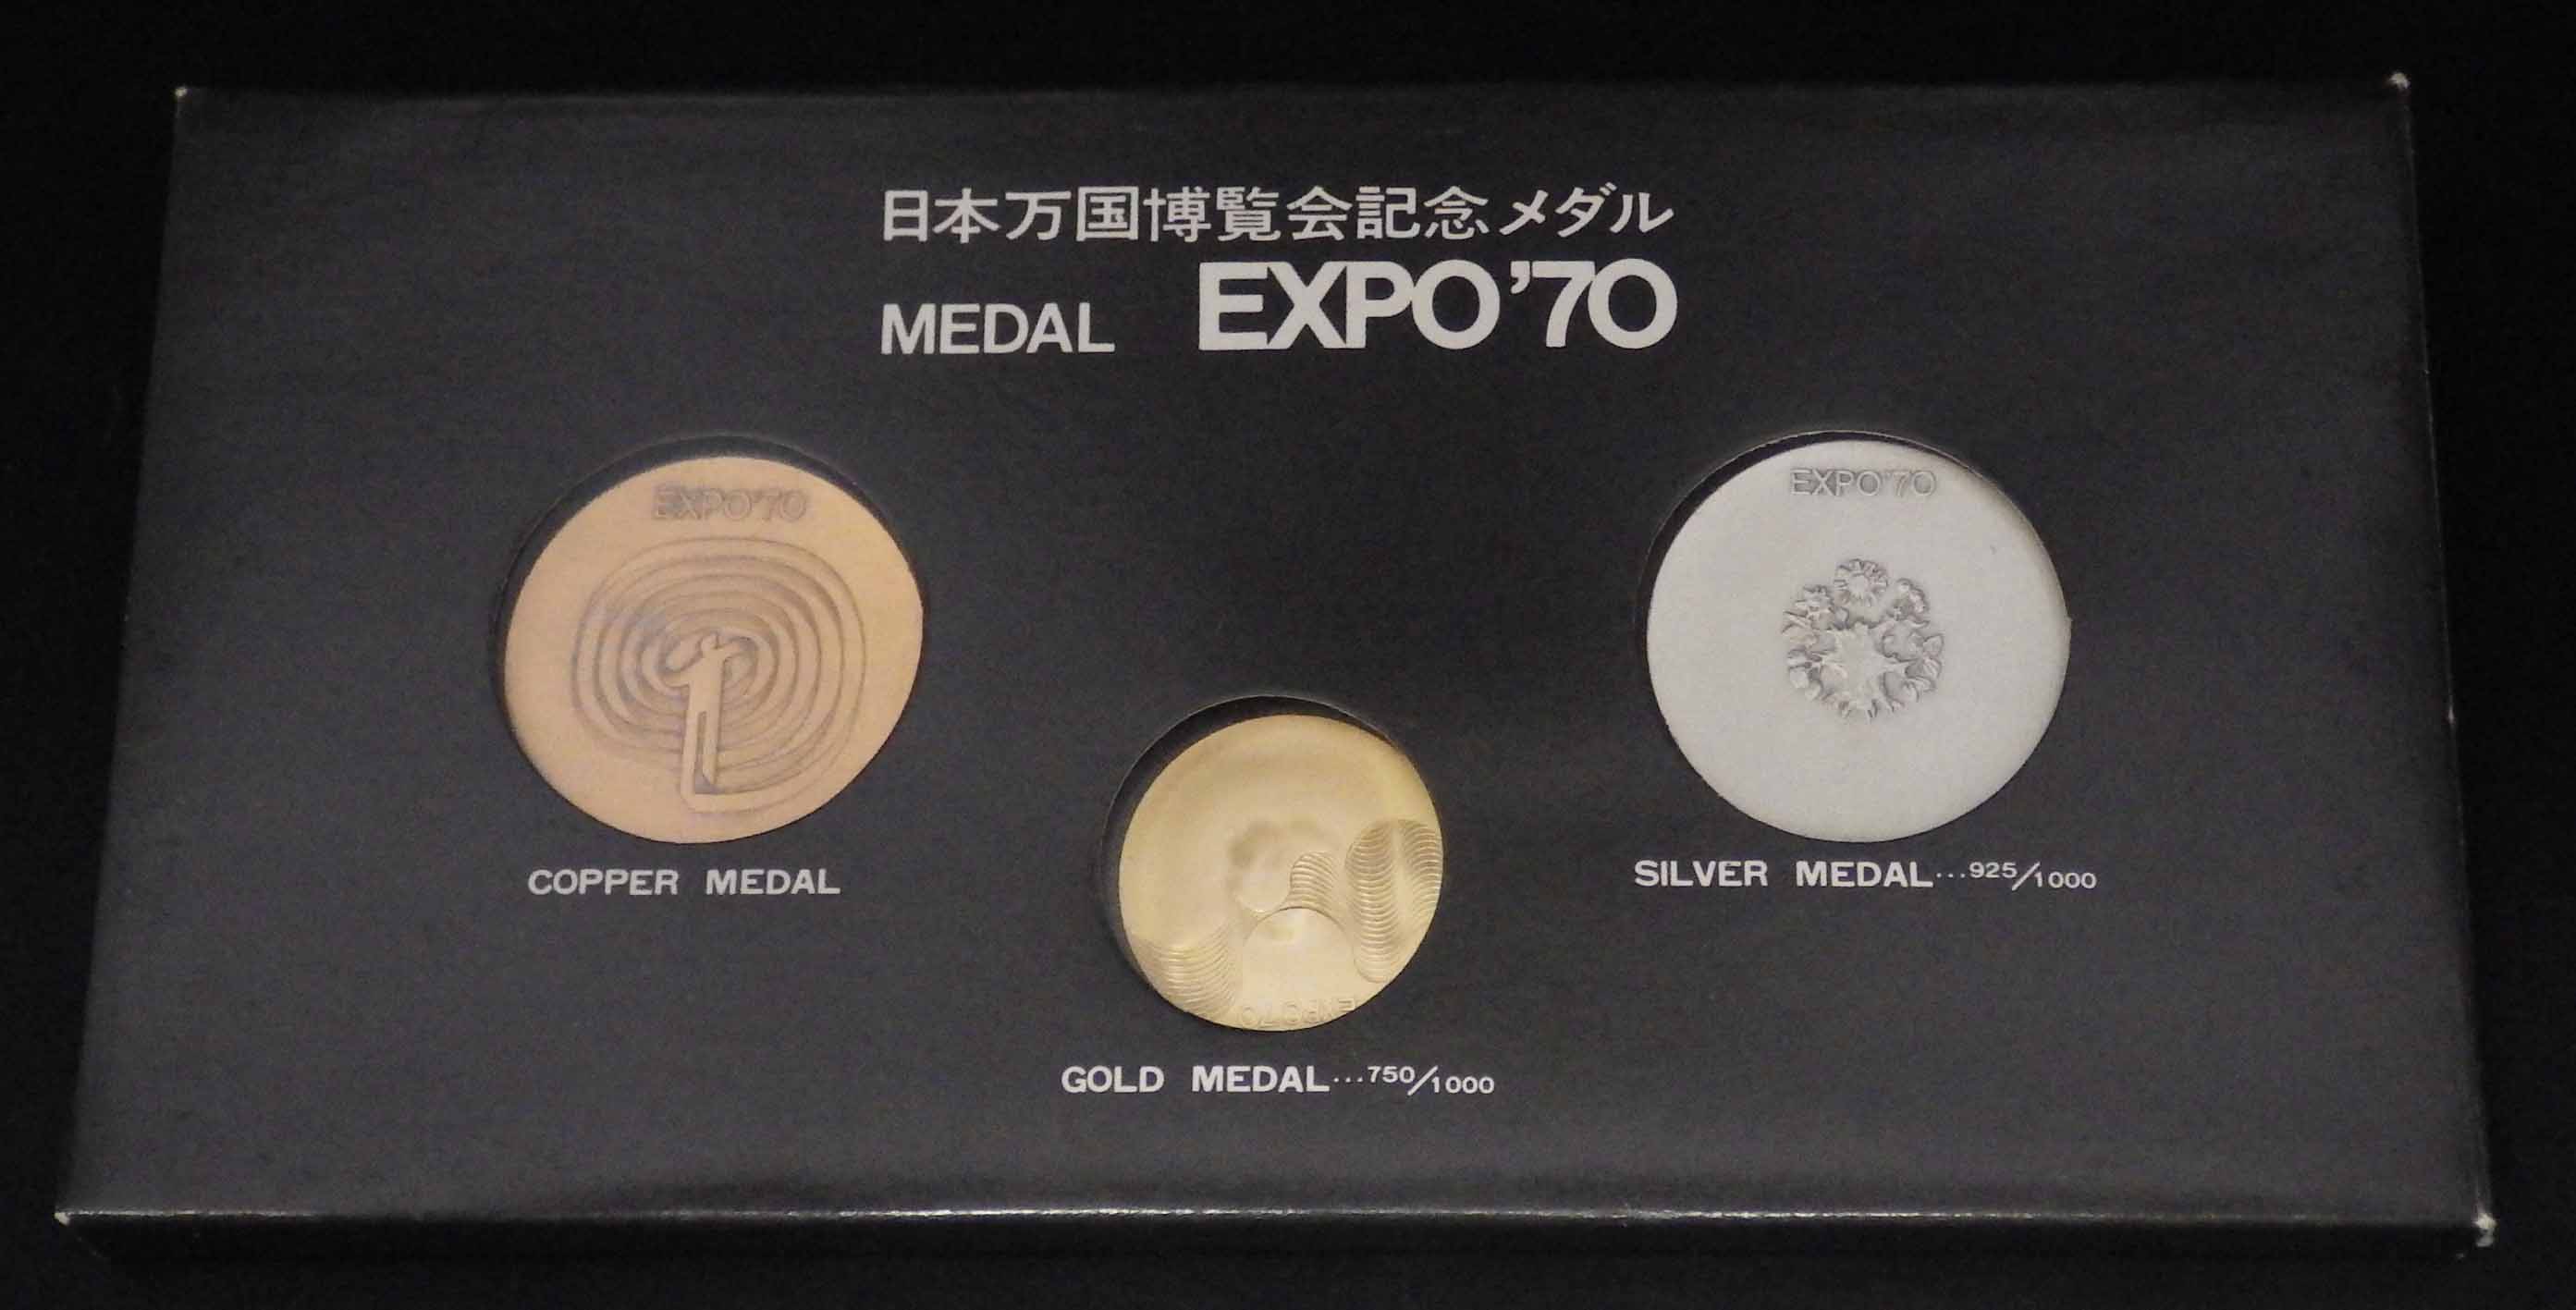 日本万博博覧会記念メダル EXPO’70 レア